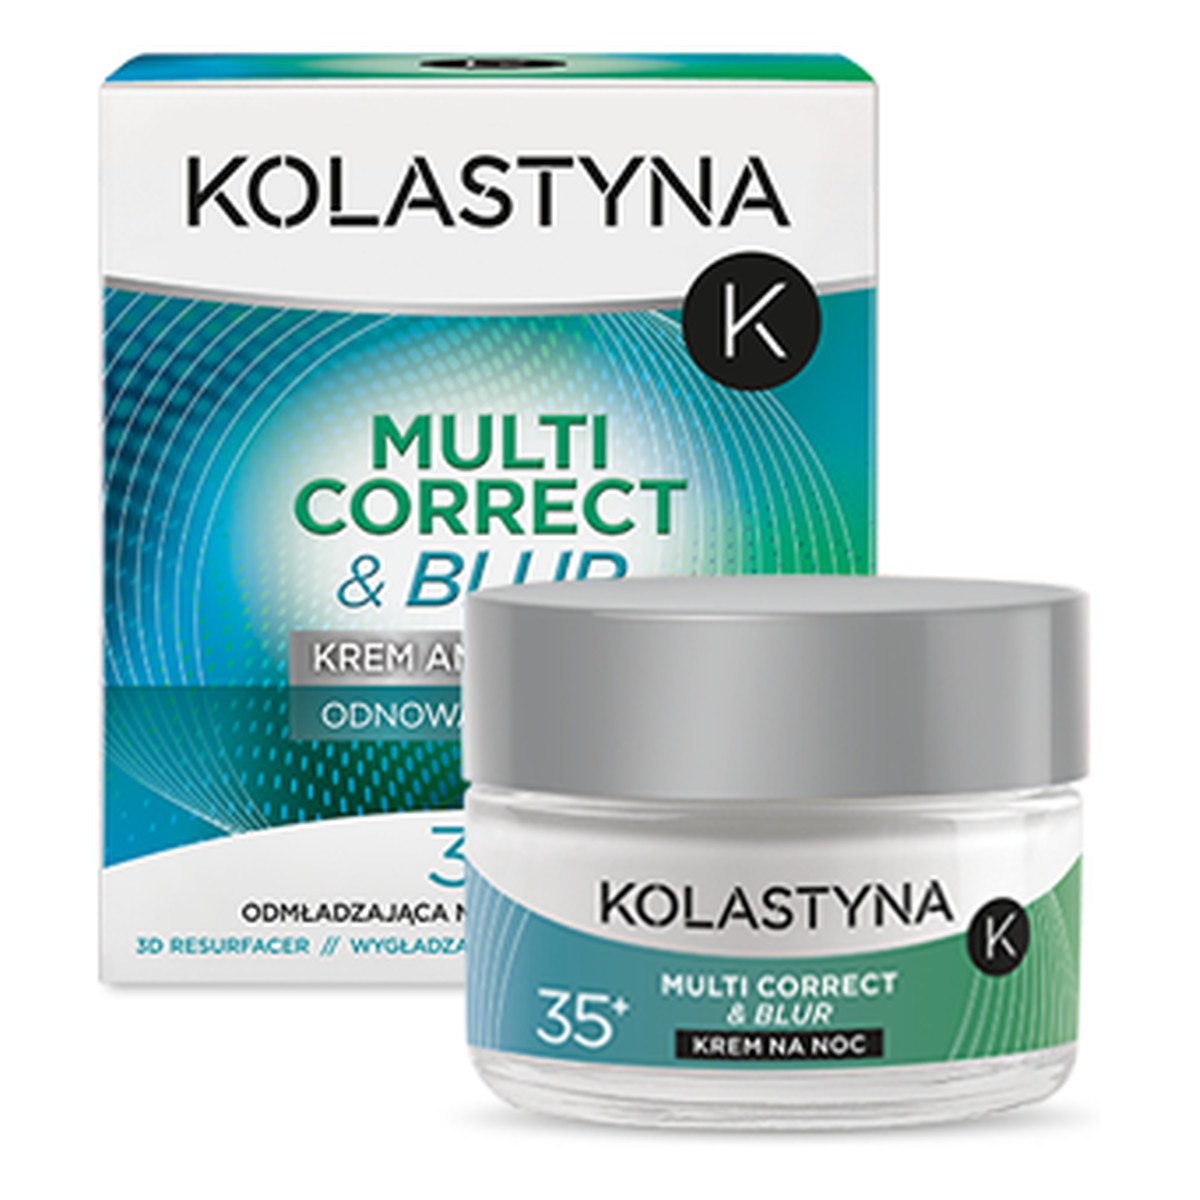 Kolastyna Multi Correct & Blur 35+ Krem Do Twarzy Anti - Ageing Na Noc 50ml